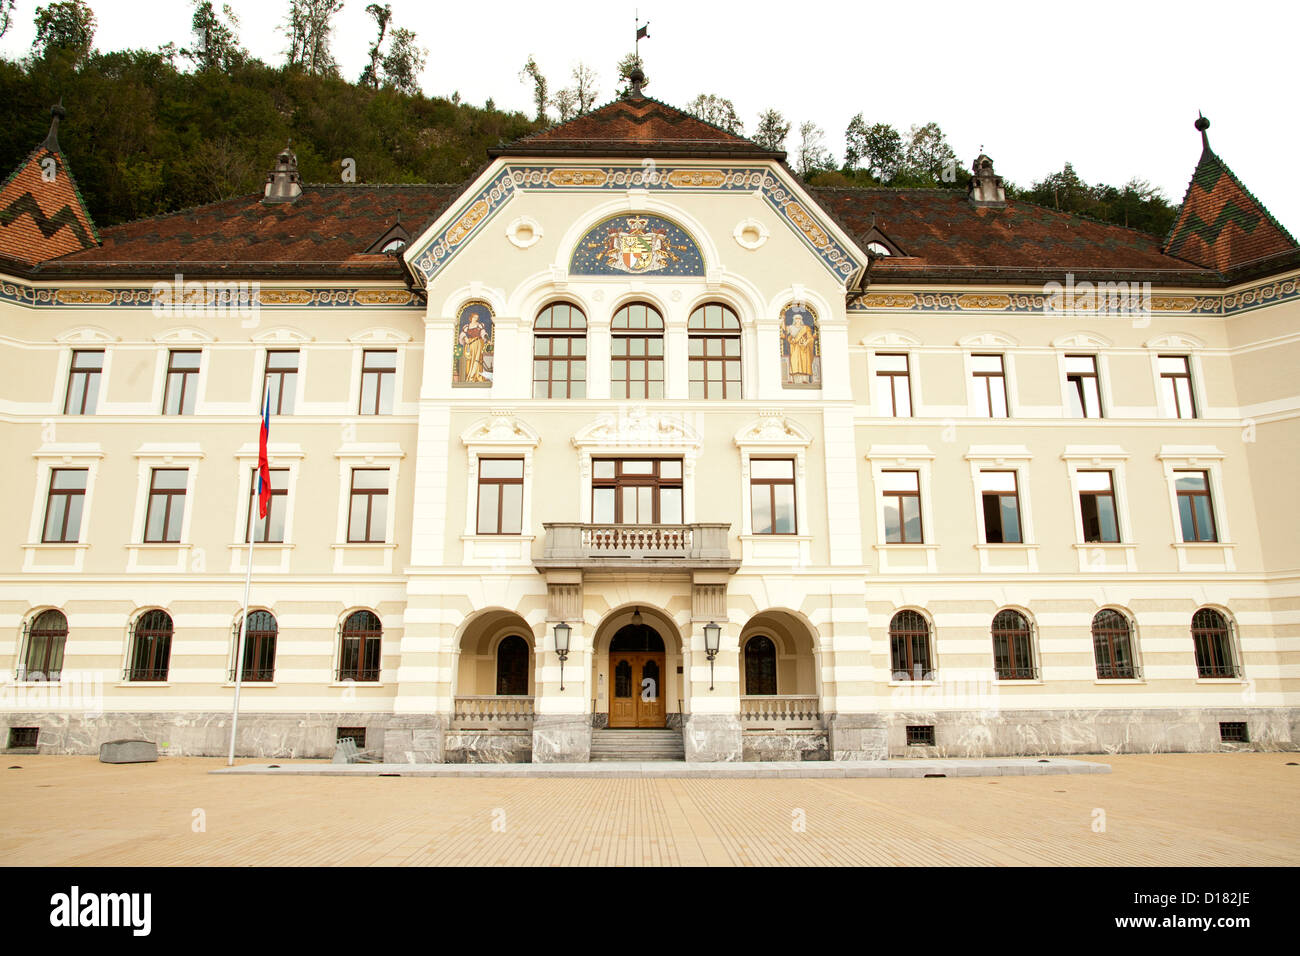 Das Regierungsgebäude (Regierung / Parlamentsgebäude) in Vaduz, der Hauptstadt des Fürstentums Liechtenstein. Stockfoto